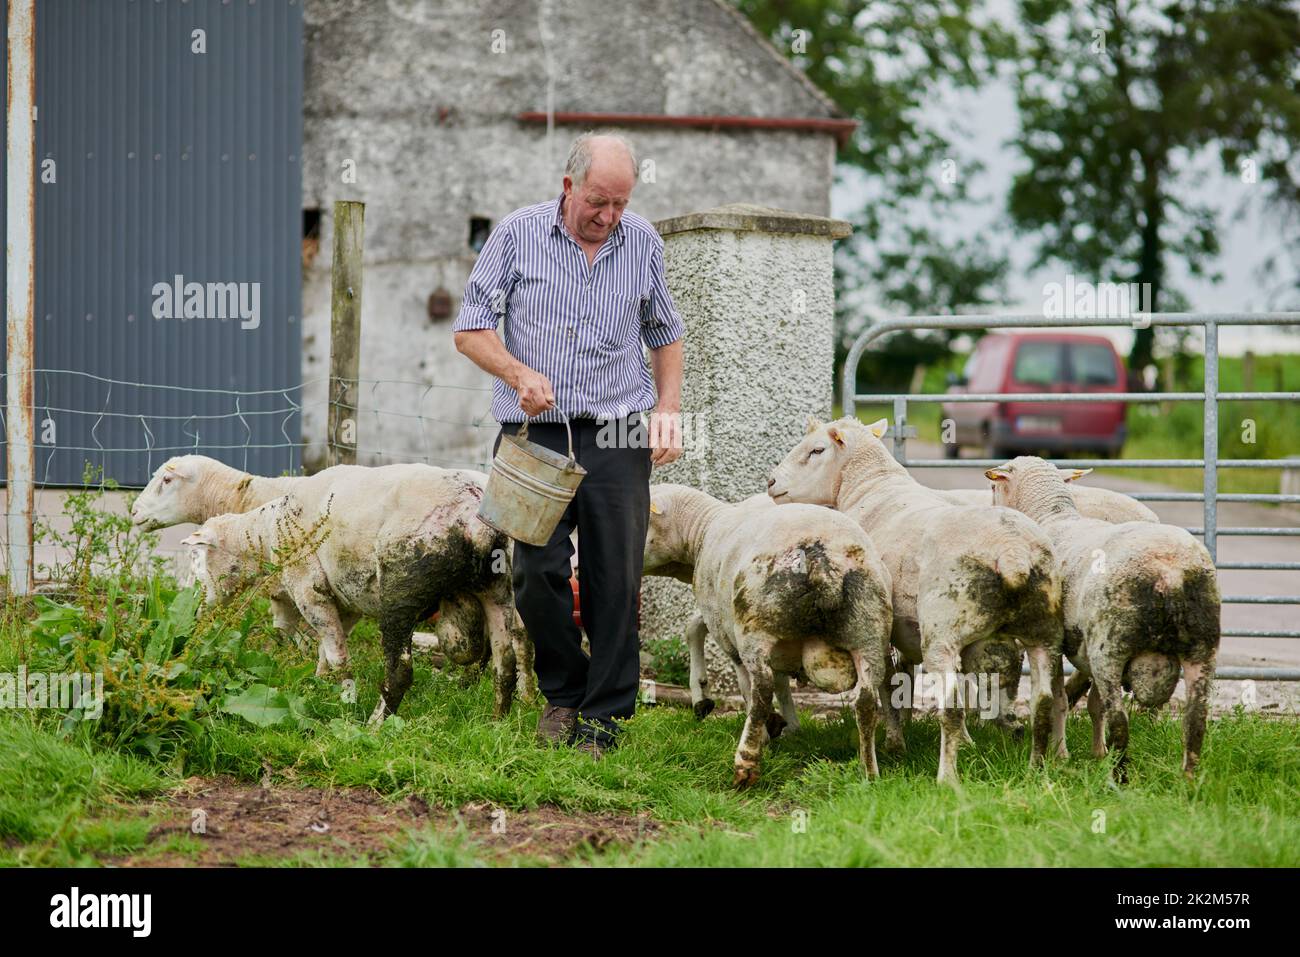 Kommen Sie und holen Sie sich Ihre Mittagspause. Aufnahme eines fröhlichen, reifen Bauern, der mit einer Herde Schafe geht und sie füttert, während er einen Eimer hält. Stockfoto